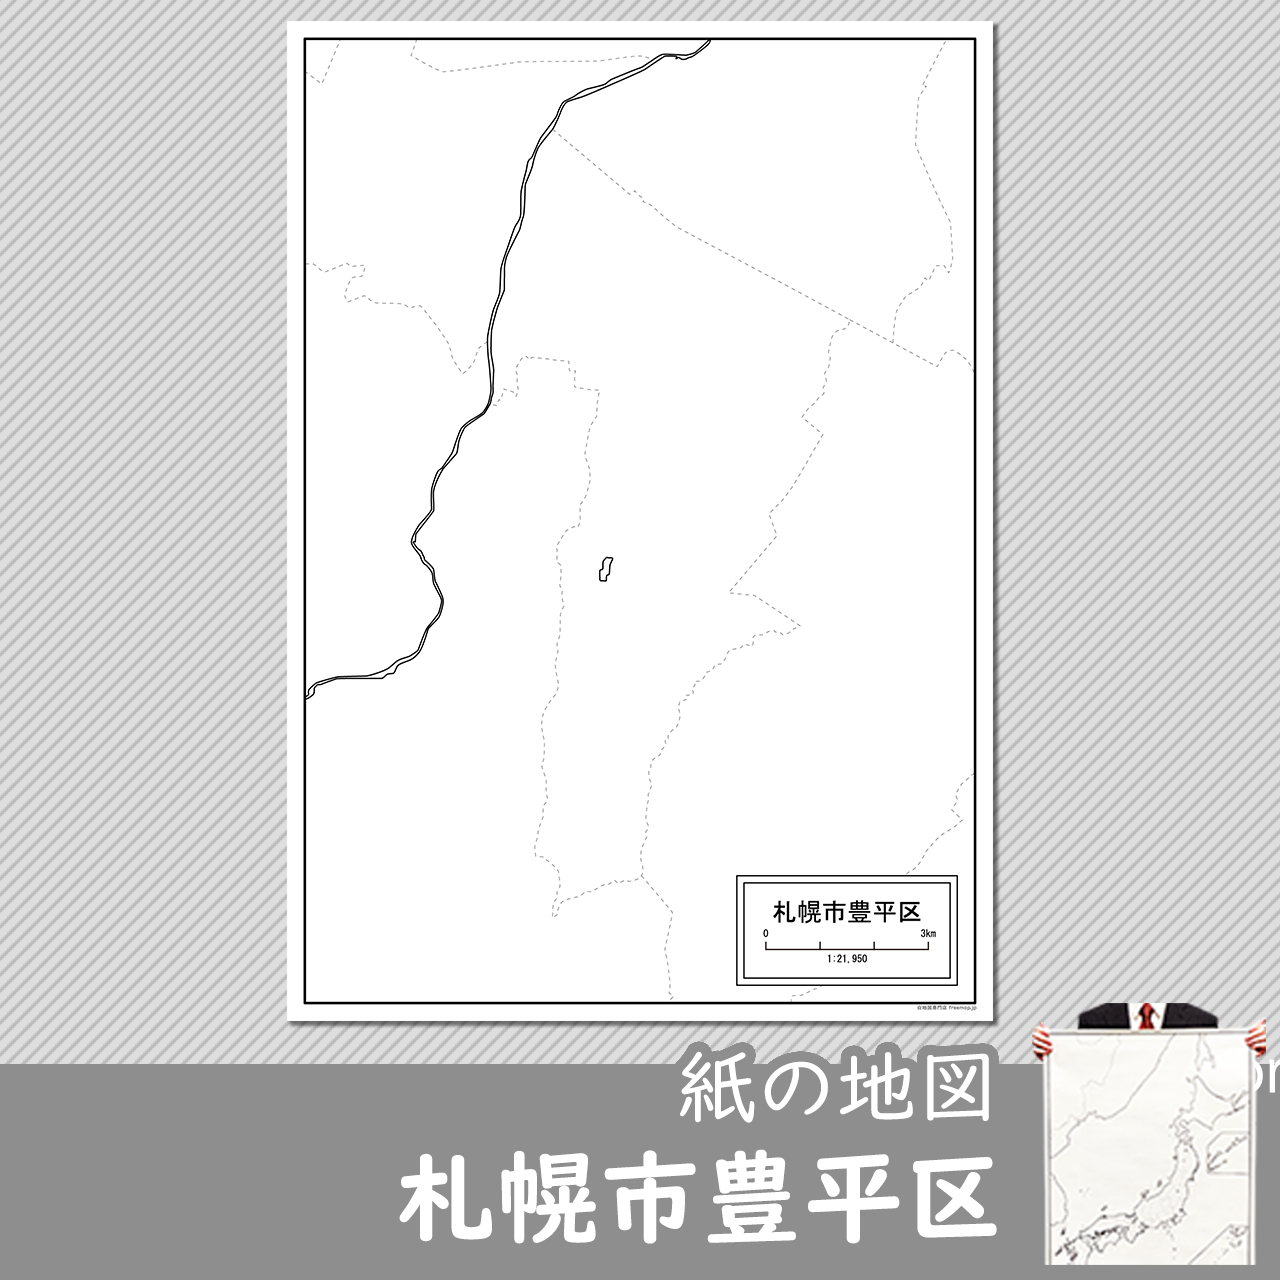 札幌市豊平区の紙の白地図のサムネイル